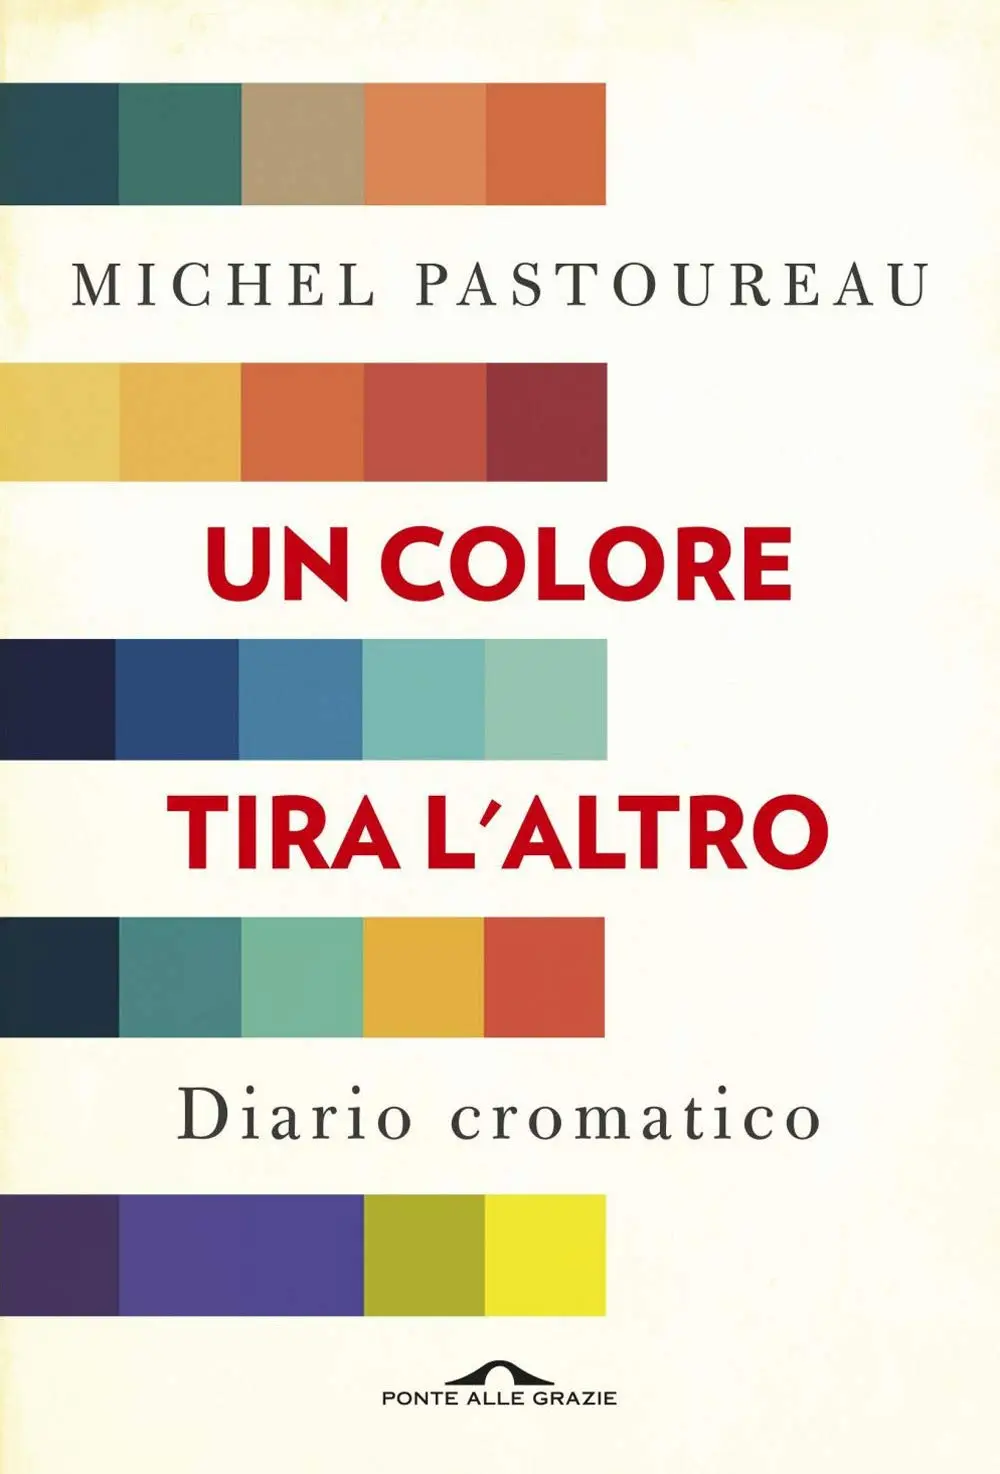 Michel Pastoureau Un colore tira l'altro. Diario cromatico / AvaxHome